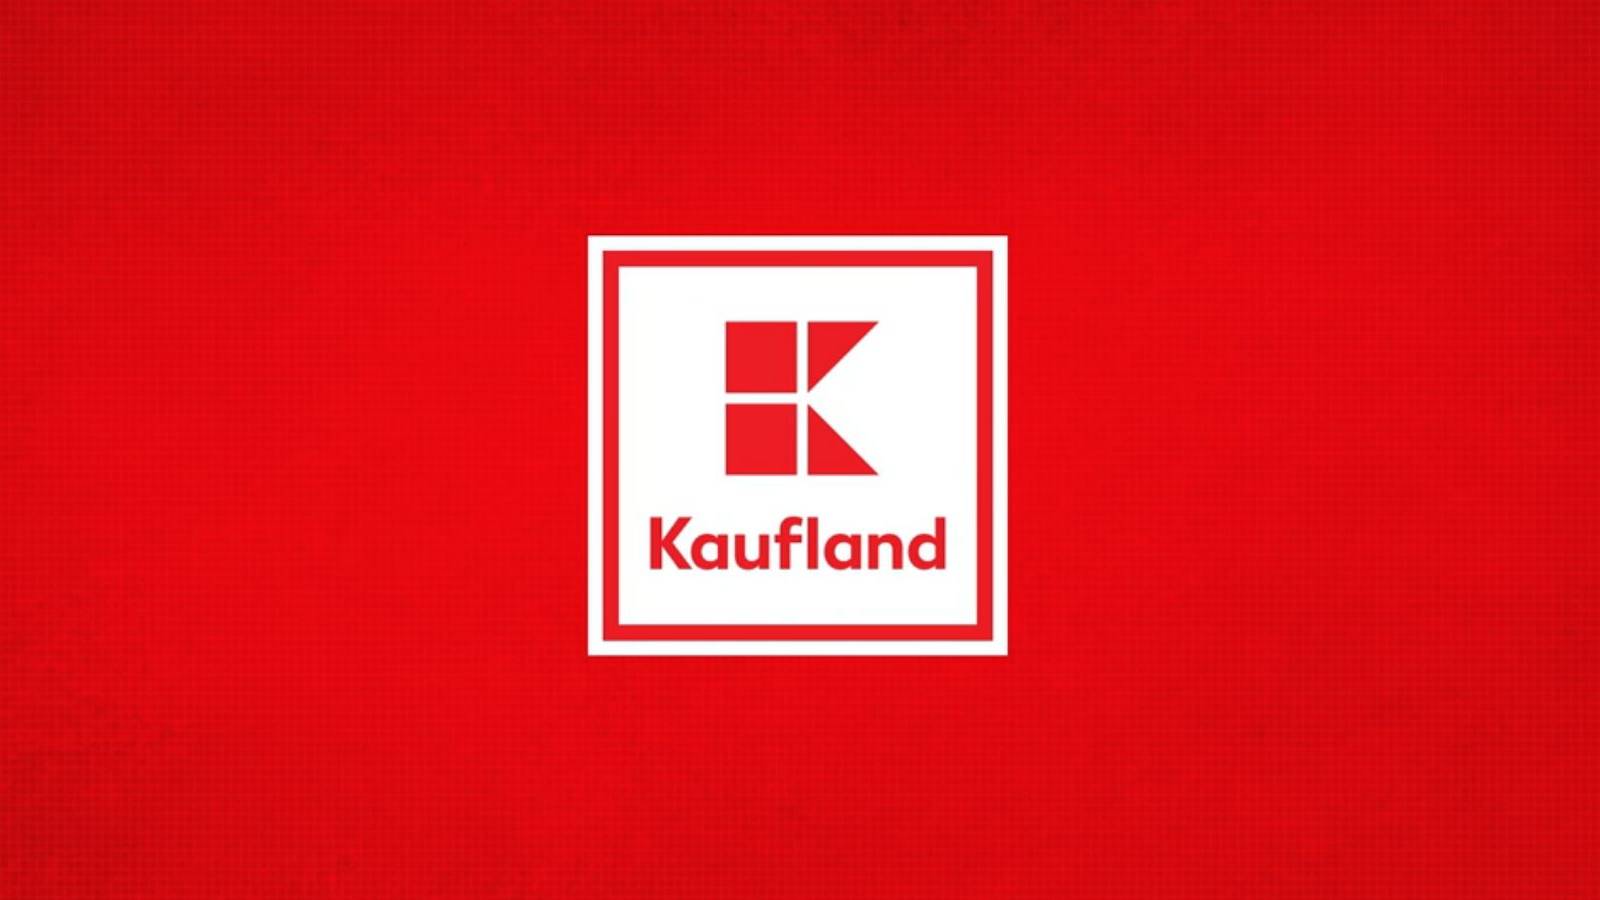 Kaufland doubled